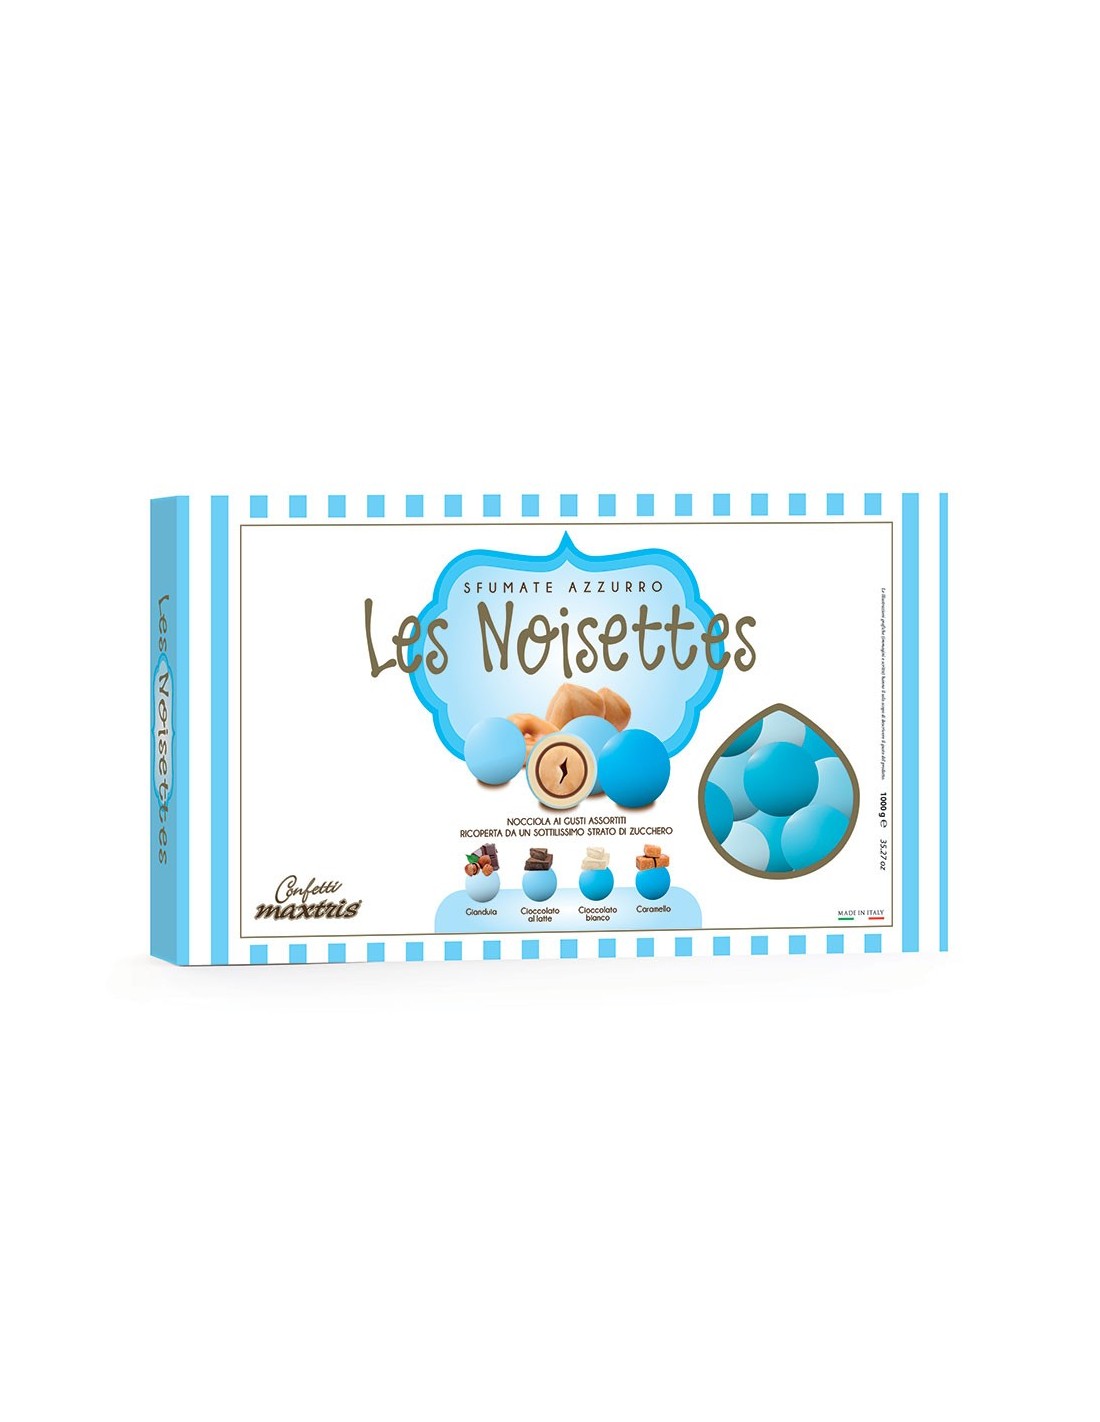 Confetti maxtris cioconocciola sfumati azzurri